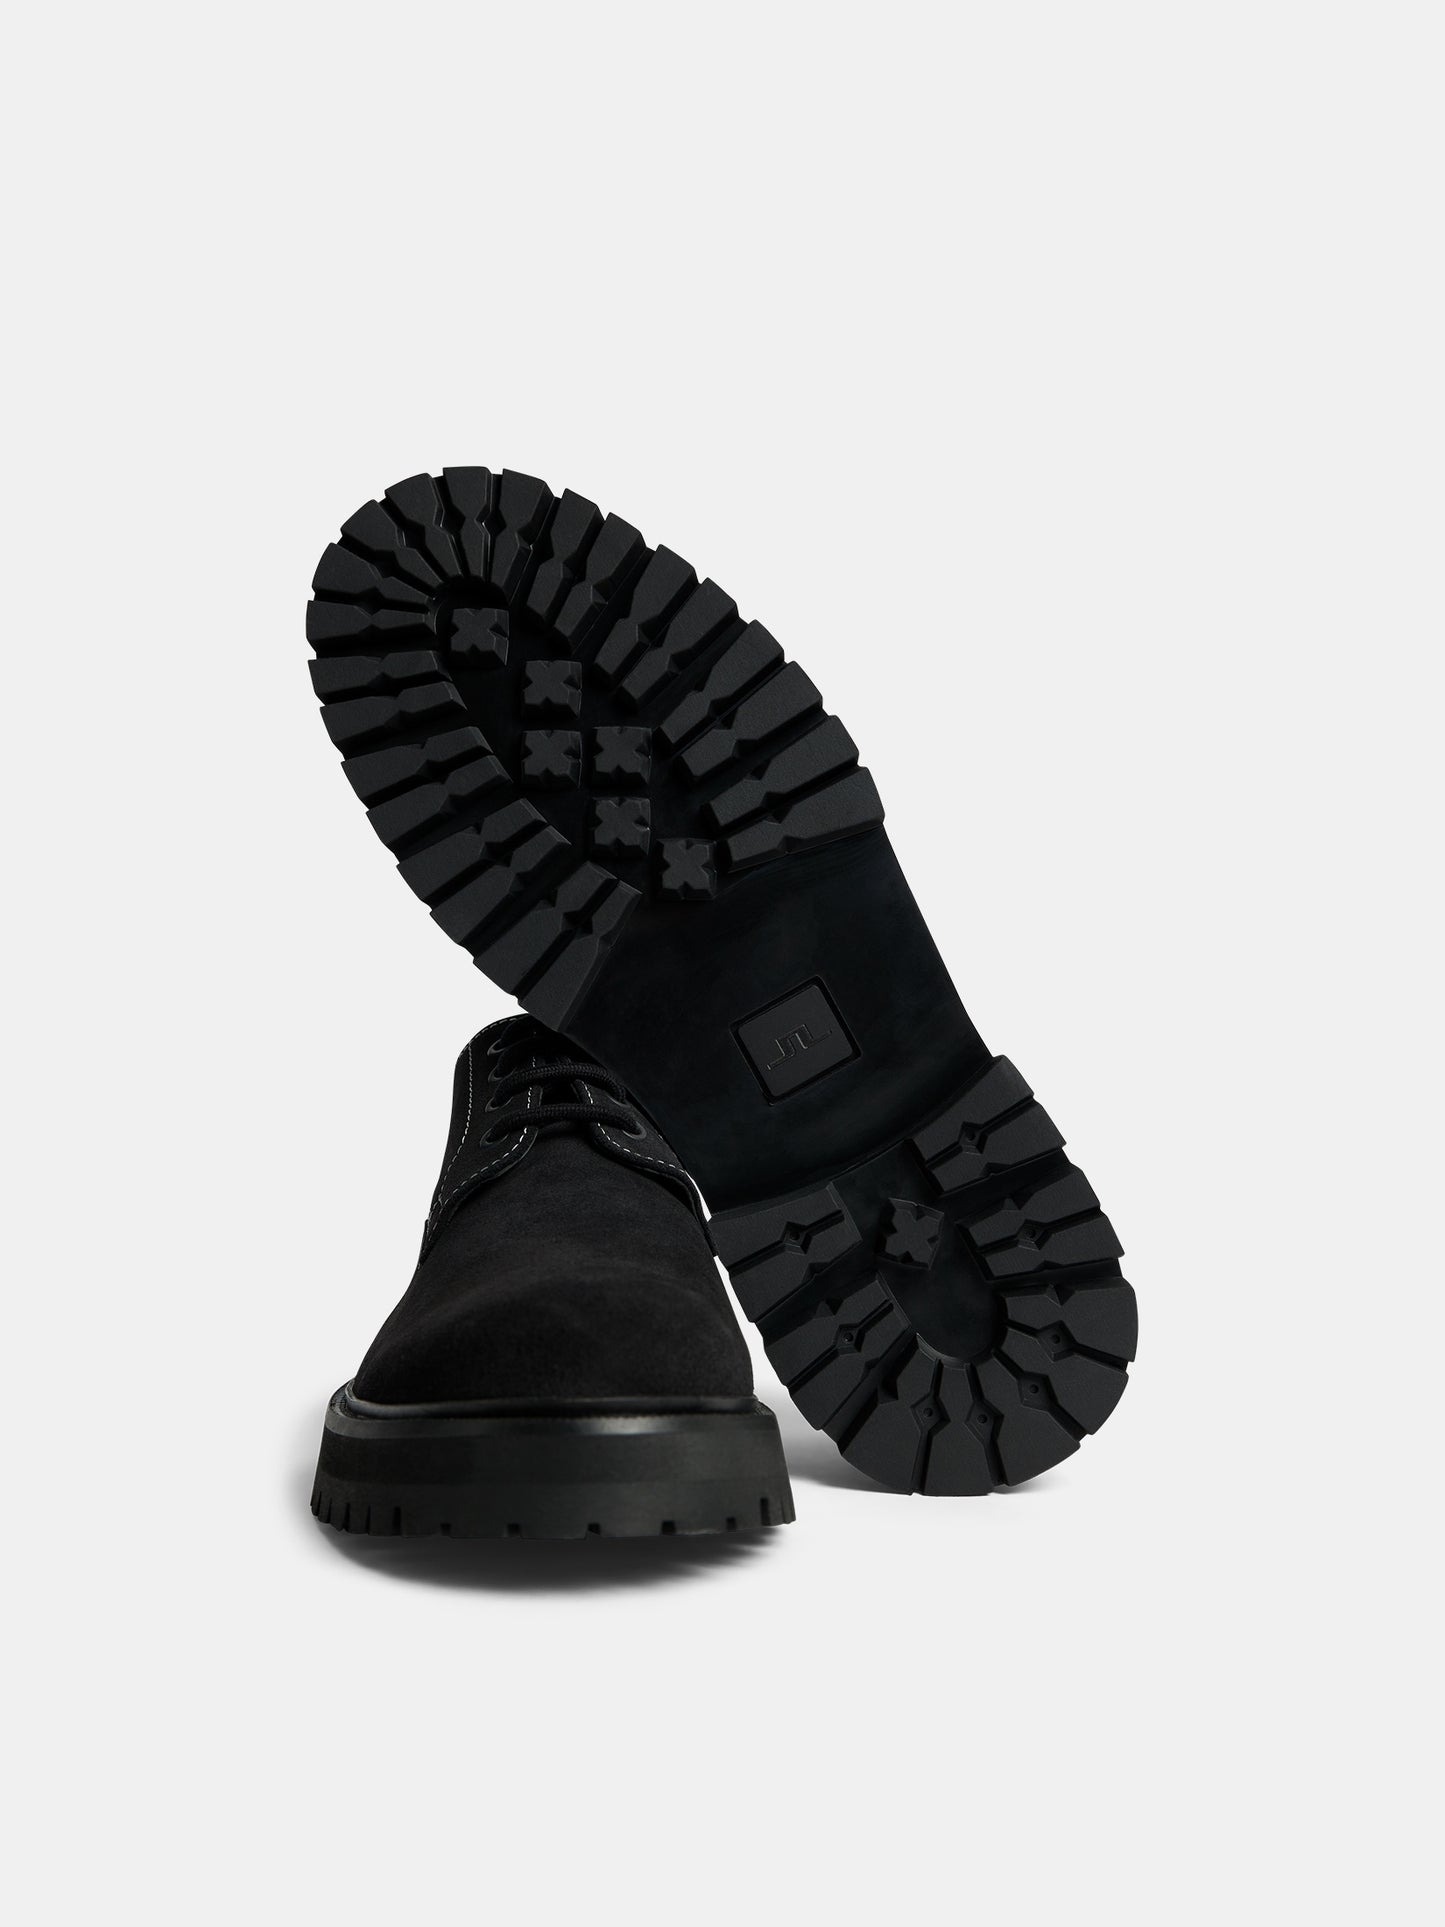 Derby Suede Shoe / Black